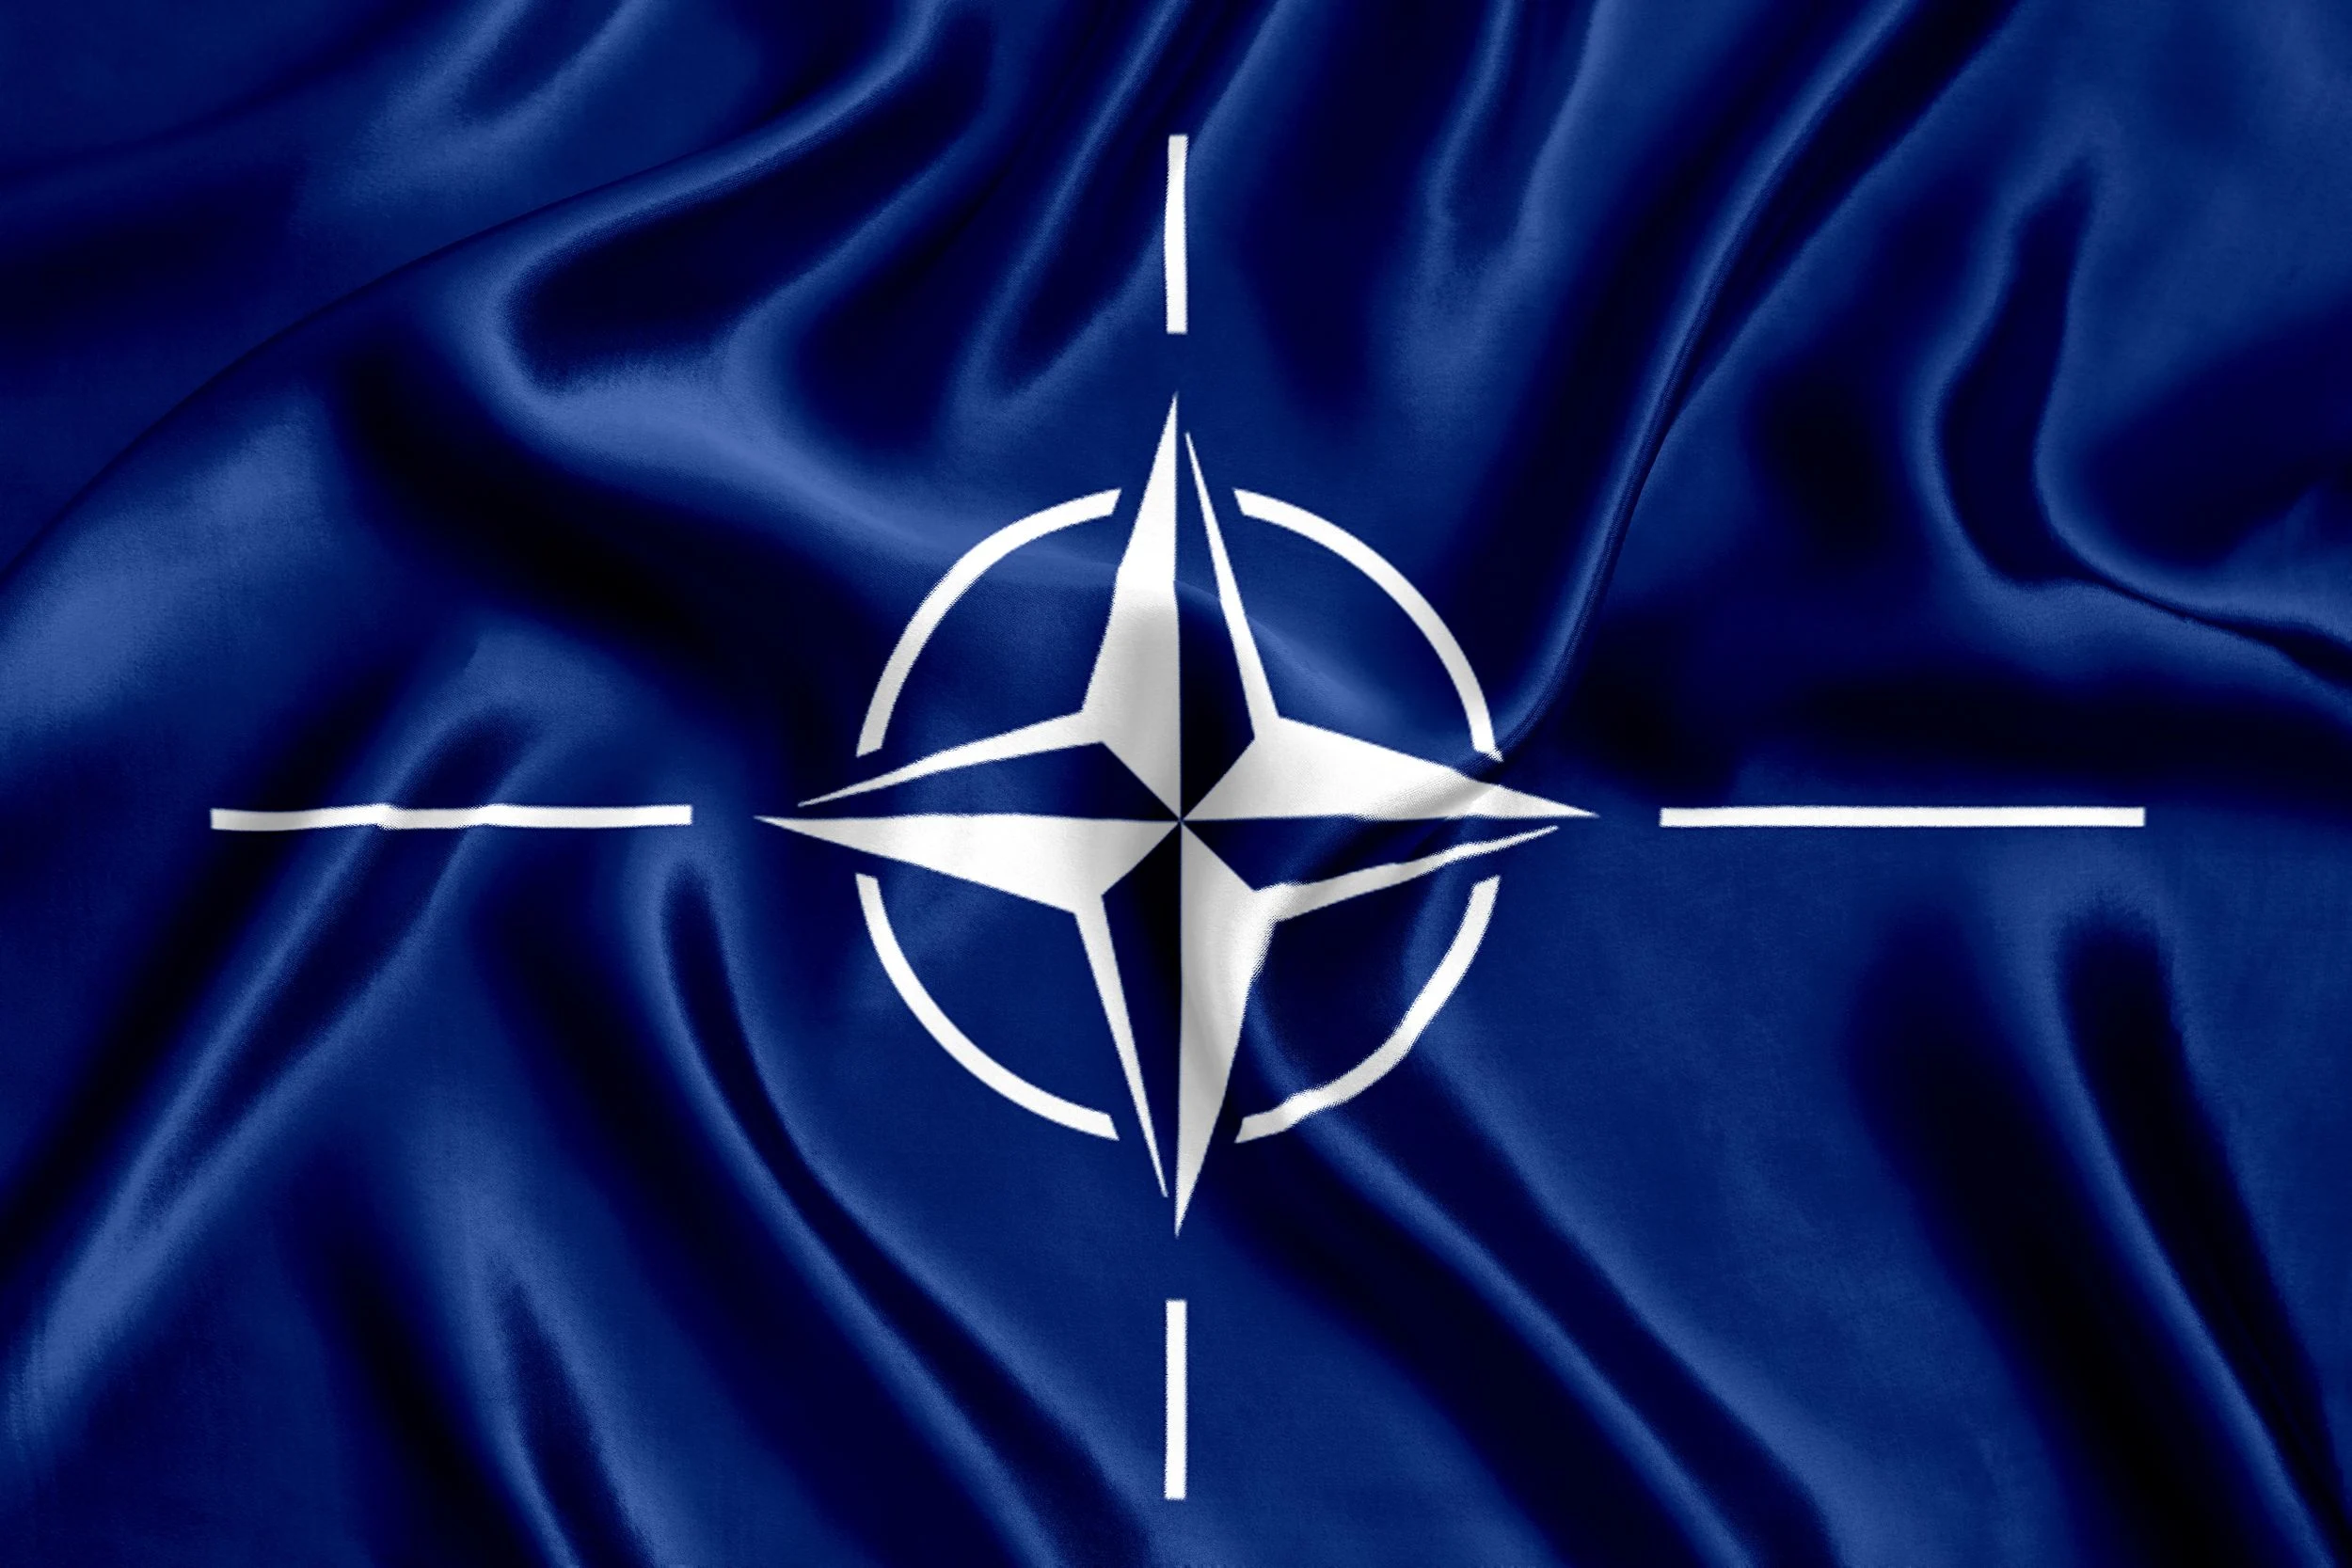 Steag NATO